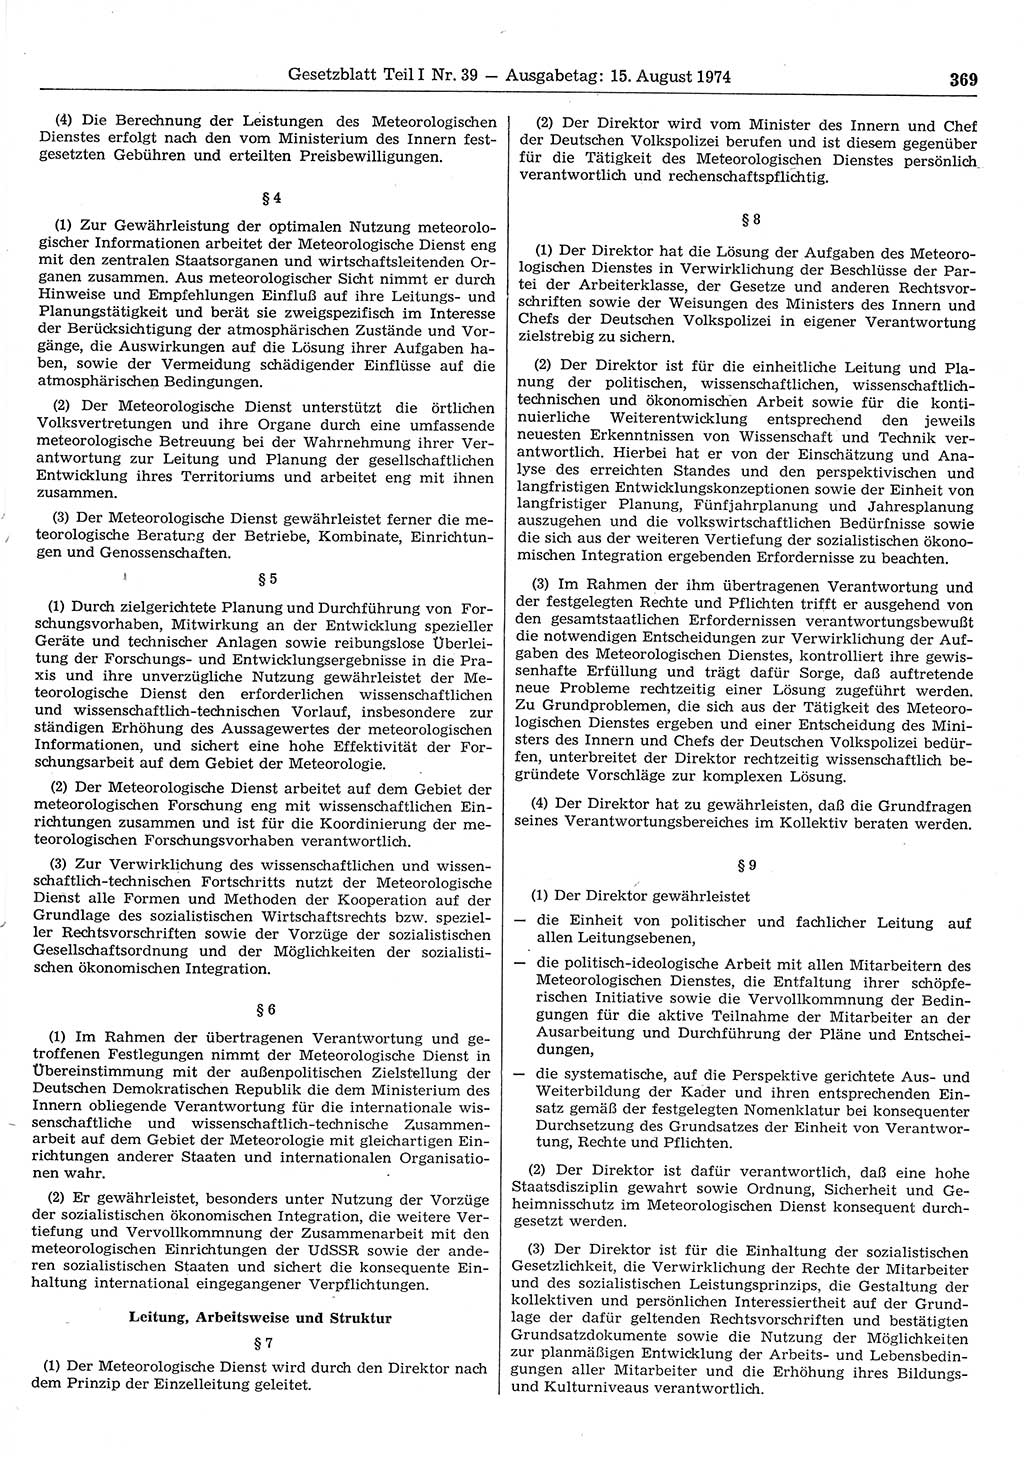 Gesetzblatt (GBl.) der Deutschen Demokratischen Republik (DDR) Teil Ⅰ 1974, Seite 369 (GBl. DDR Ⅰ 1974, S. 369)